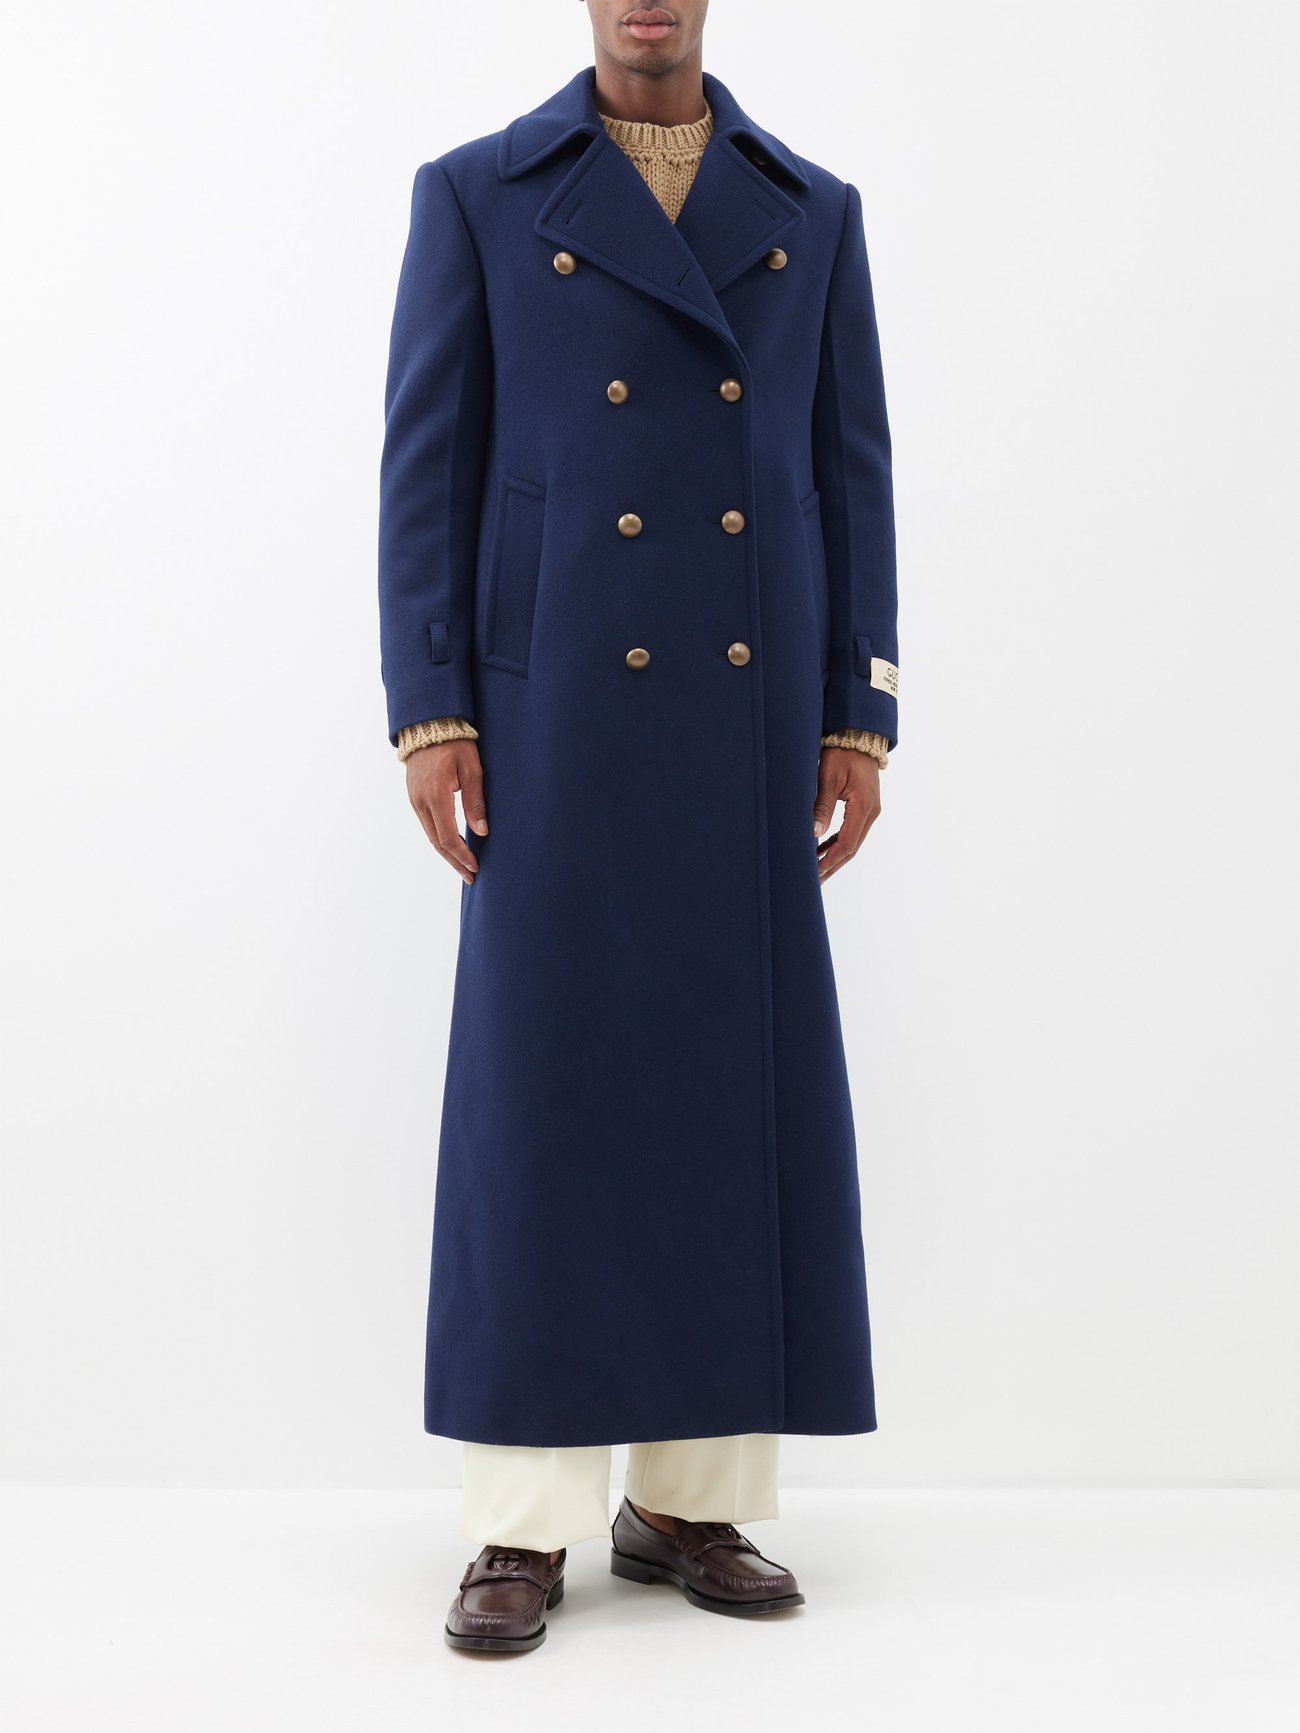 Alexander McQueen Men's blue denim trench coat